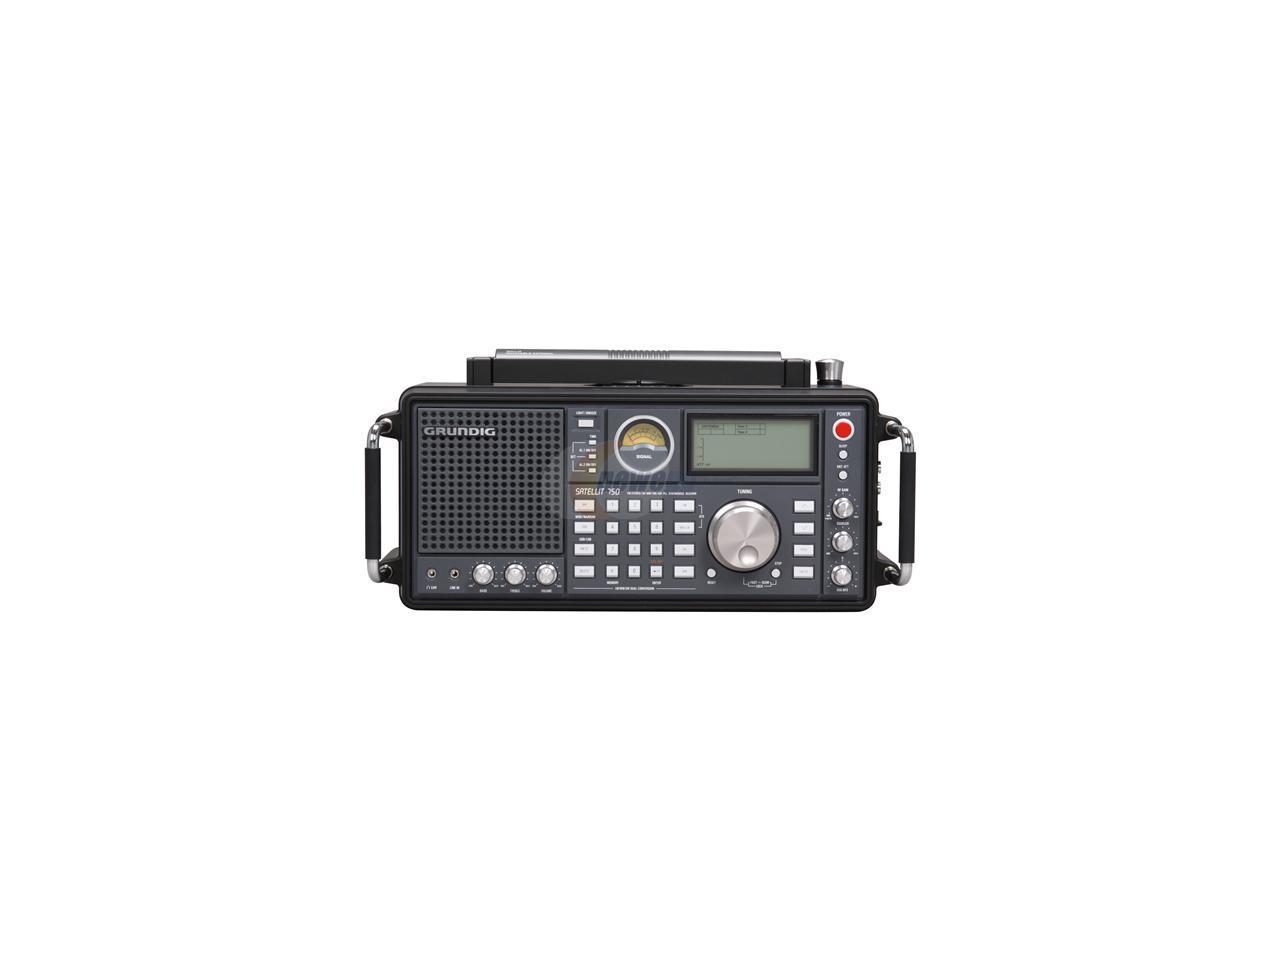 Eton Am Fm Shortwave Radio Grundig Satellit 750 Newegg Ca